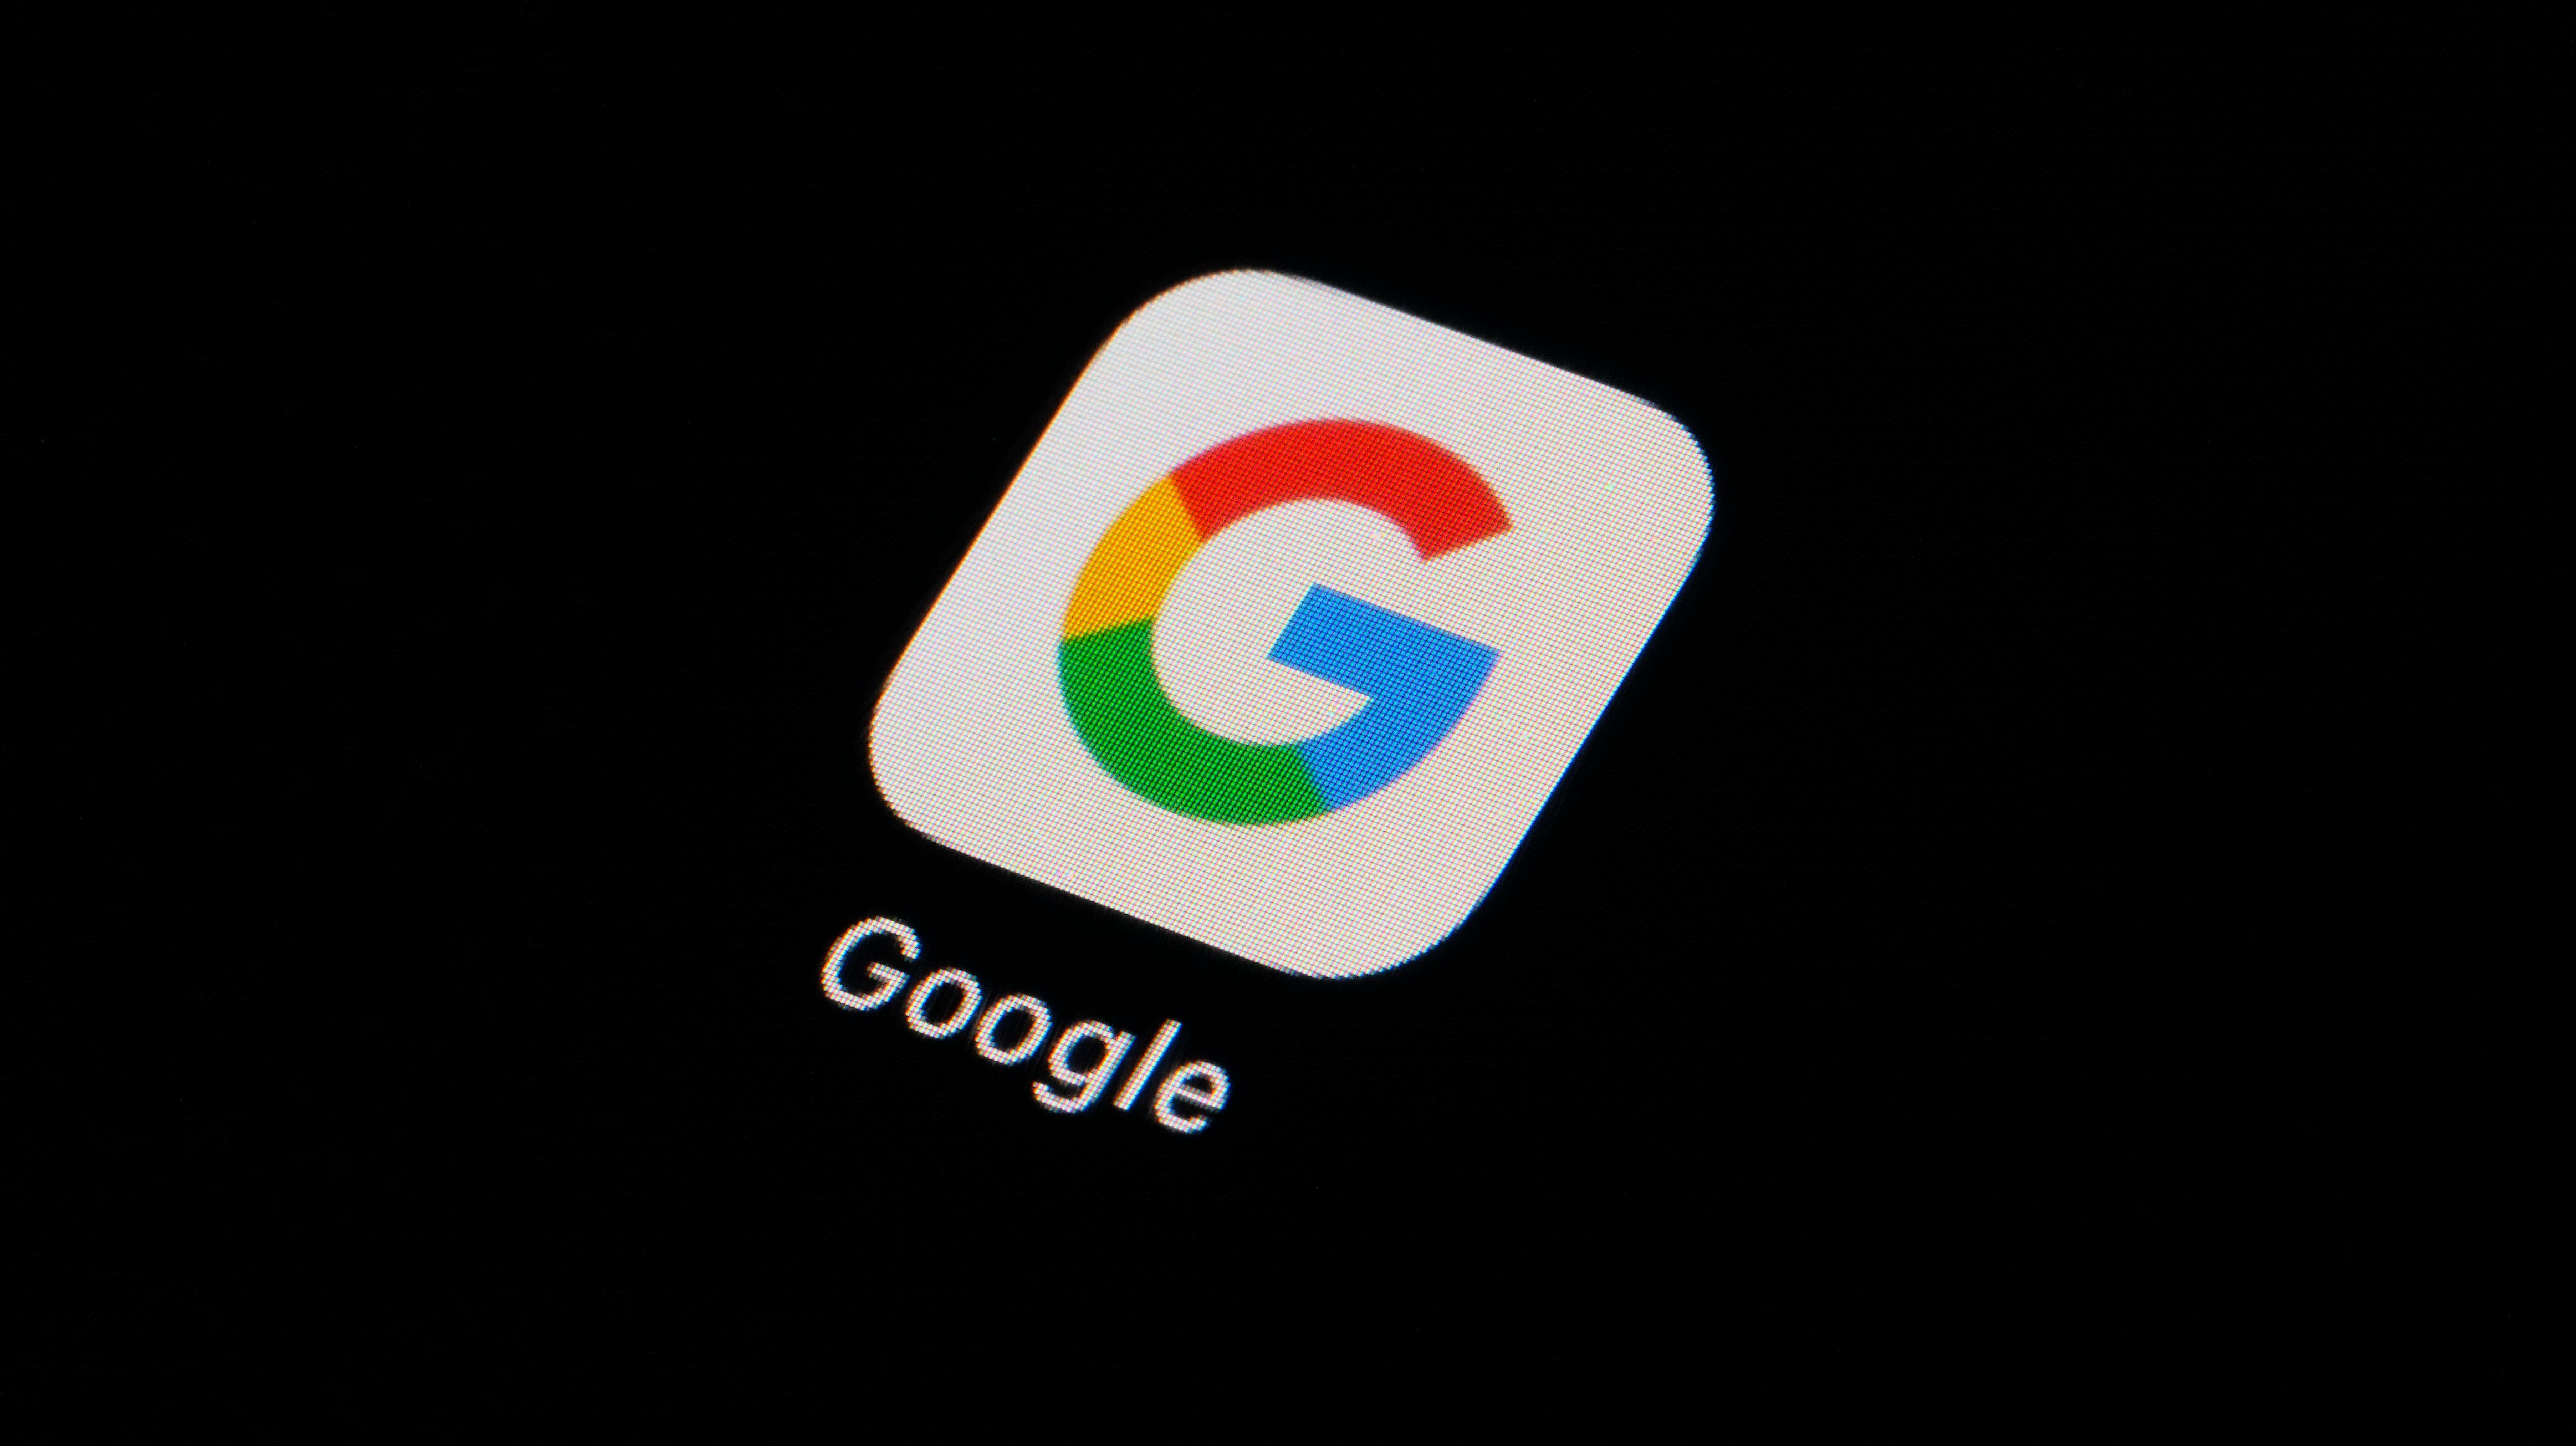 Google, Gizli Modda Gözatma Geçmişini Silmeyi Kabul Ediyor Dava Uzlaşması başlıklı makalenin resmi